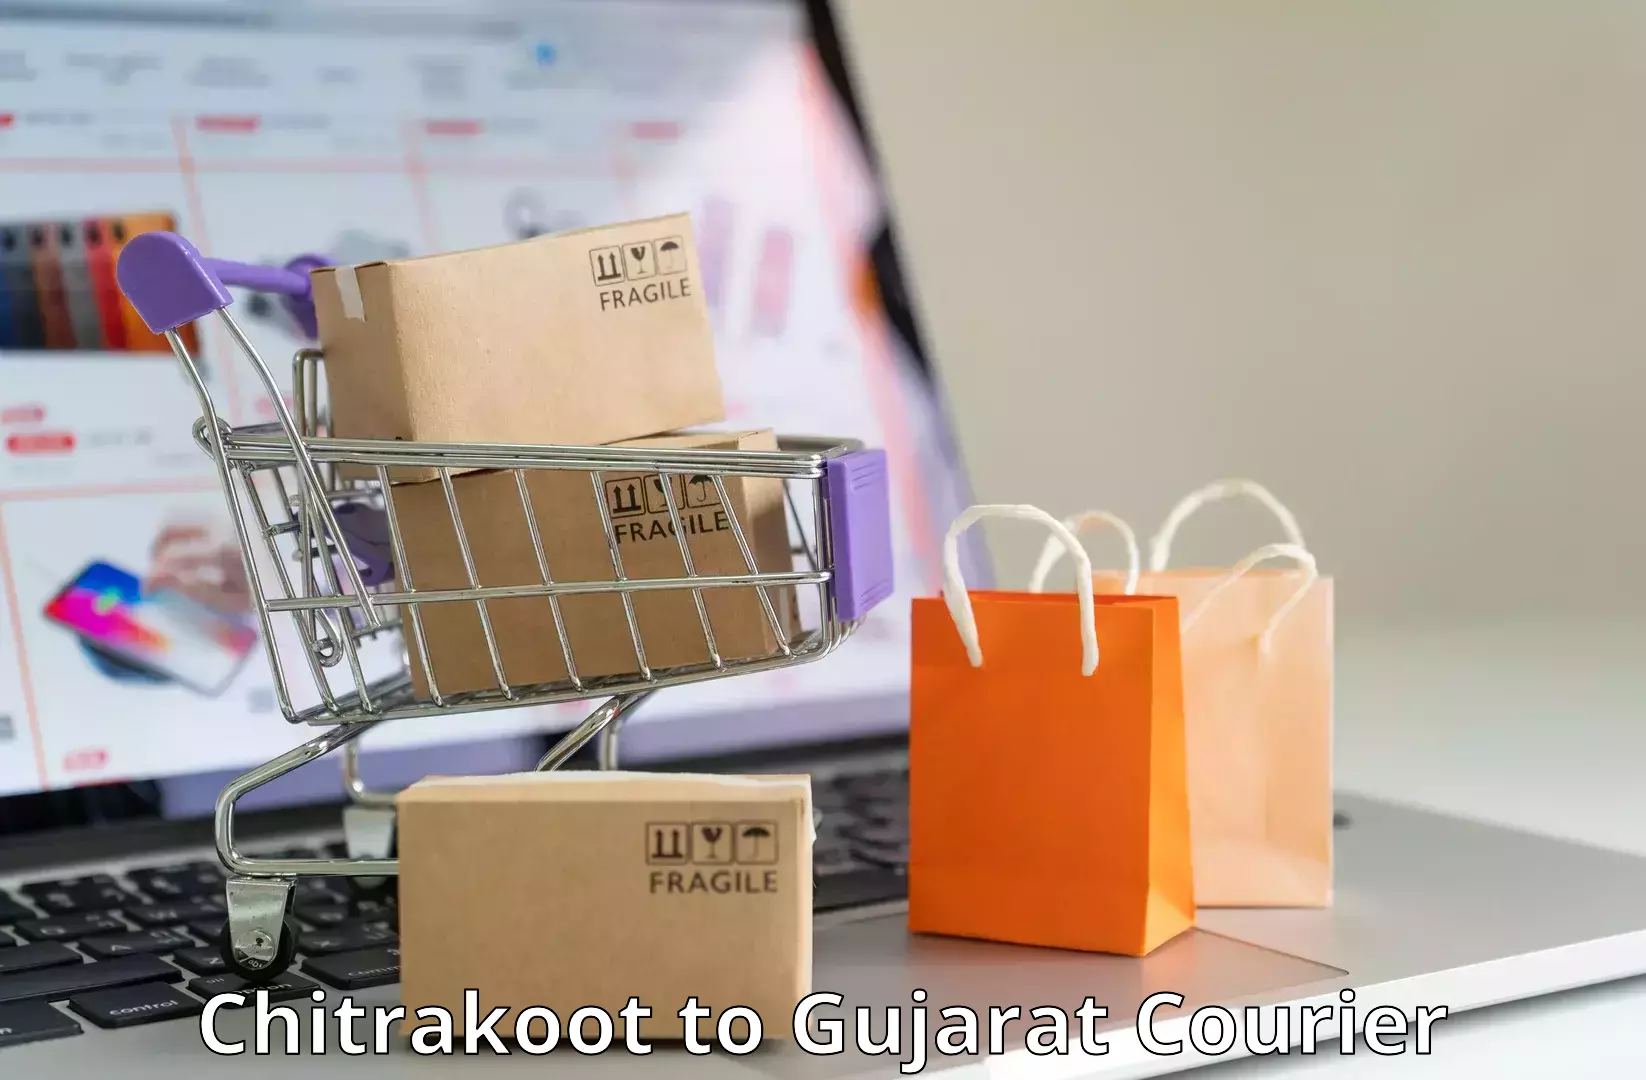 Global logistics network Chitrakoot to Narmada Gujarat